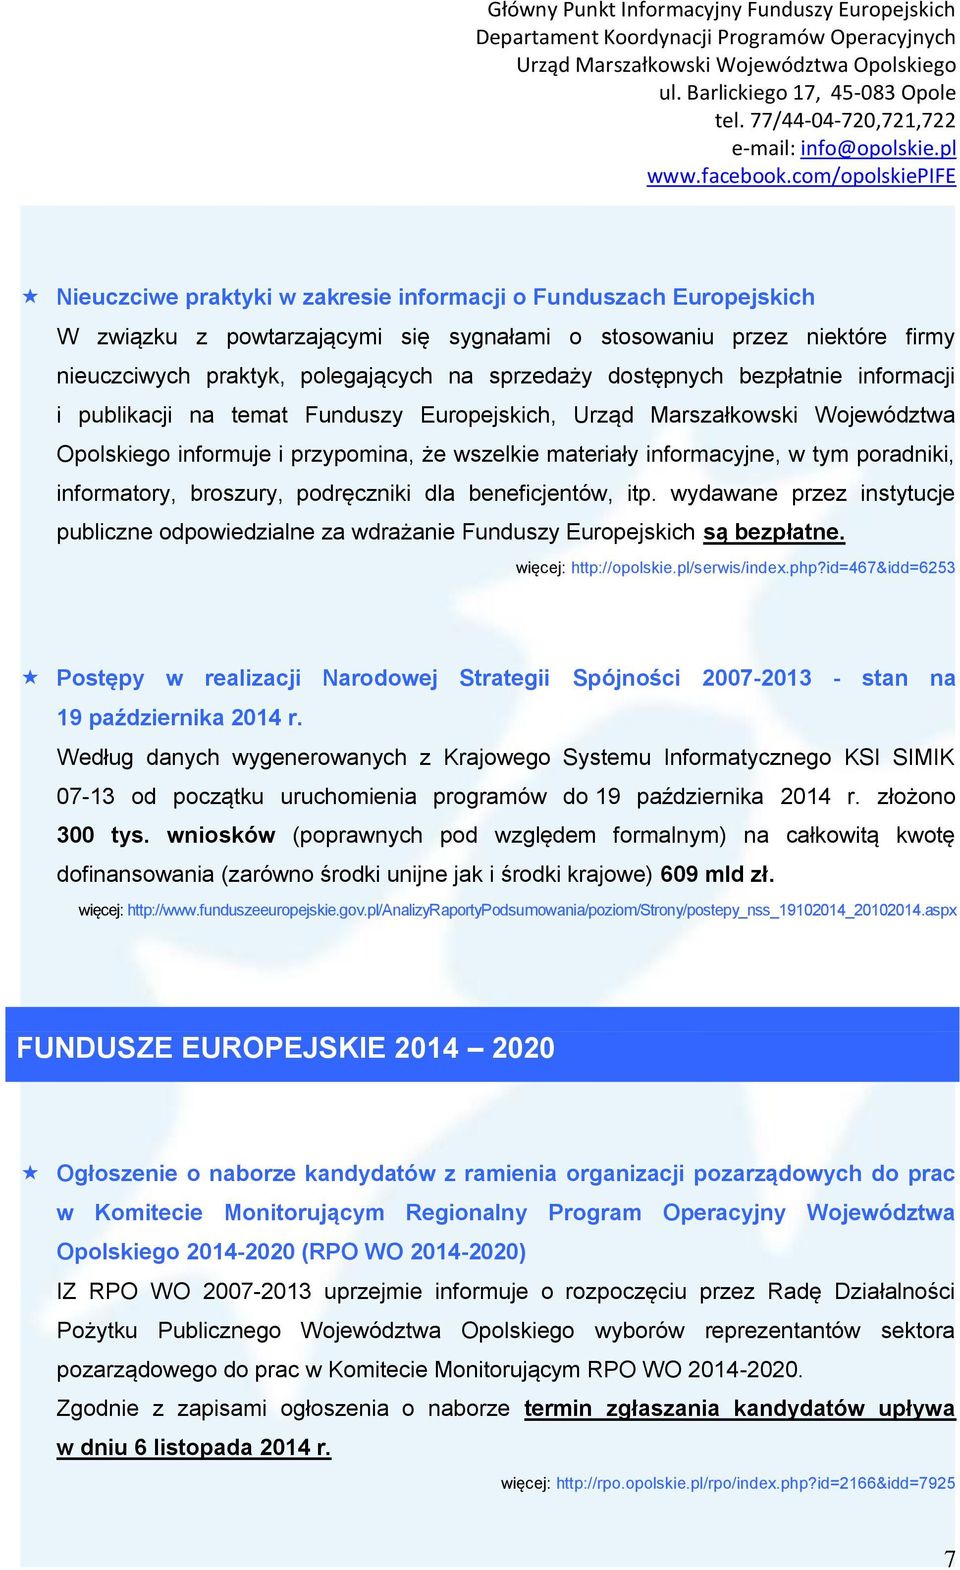 informatory, broszury, podręczniki dla beneficjentów, itp. wydawane przez instytucje publiczne odpowiedzialne za wdrażanie Funduszy Europejskich są bezpłatne. więcej: http://opolskie.pl/serwis/index.